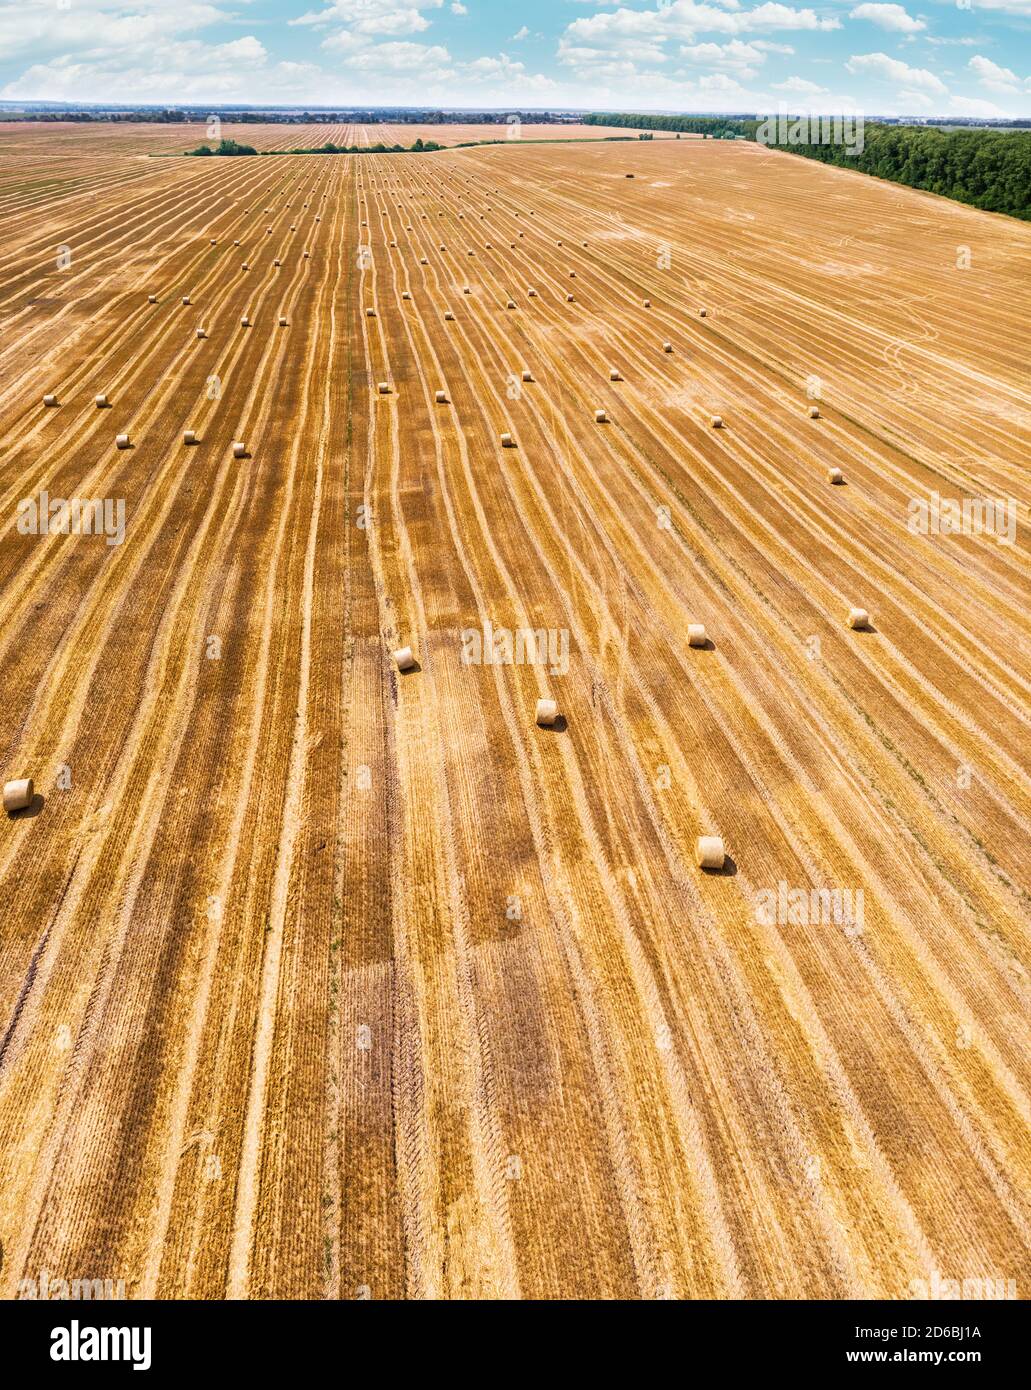 Vue aérienne du champ de blé récolté. Des botte de foin se sont posé sur le champ agricole. Photo prise sur drone. Banque D'Images